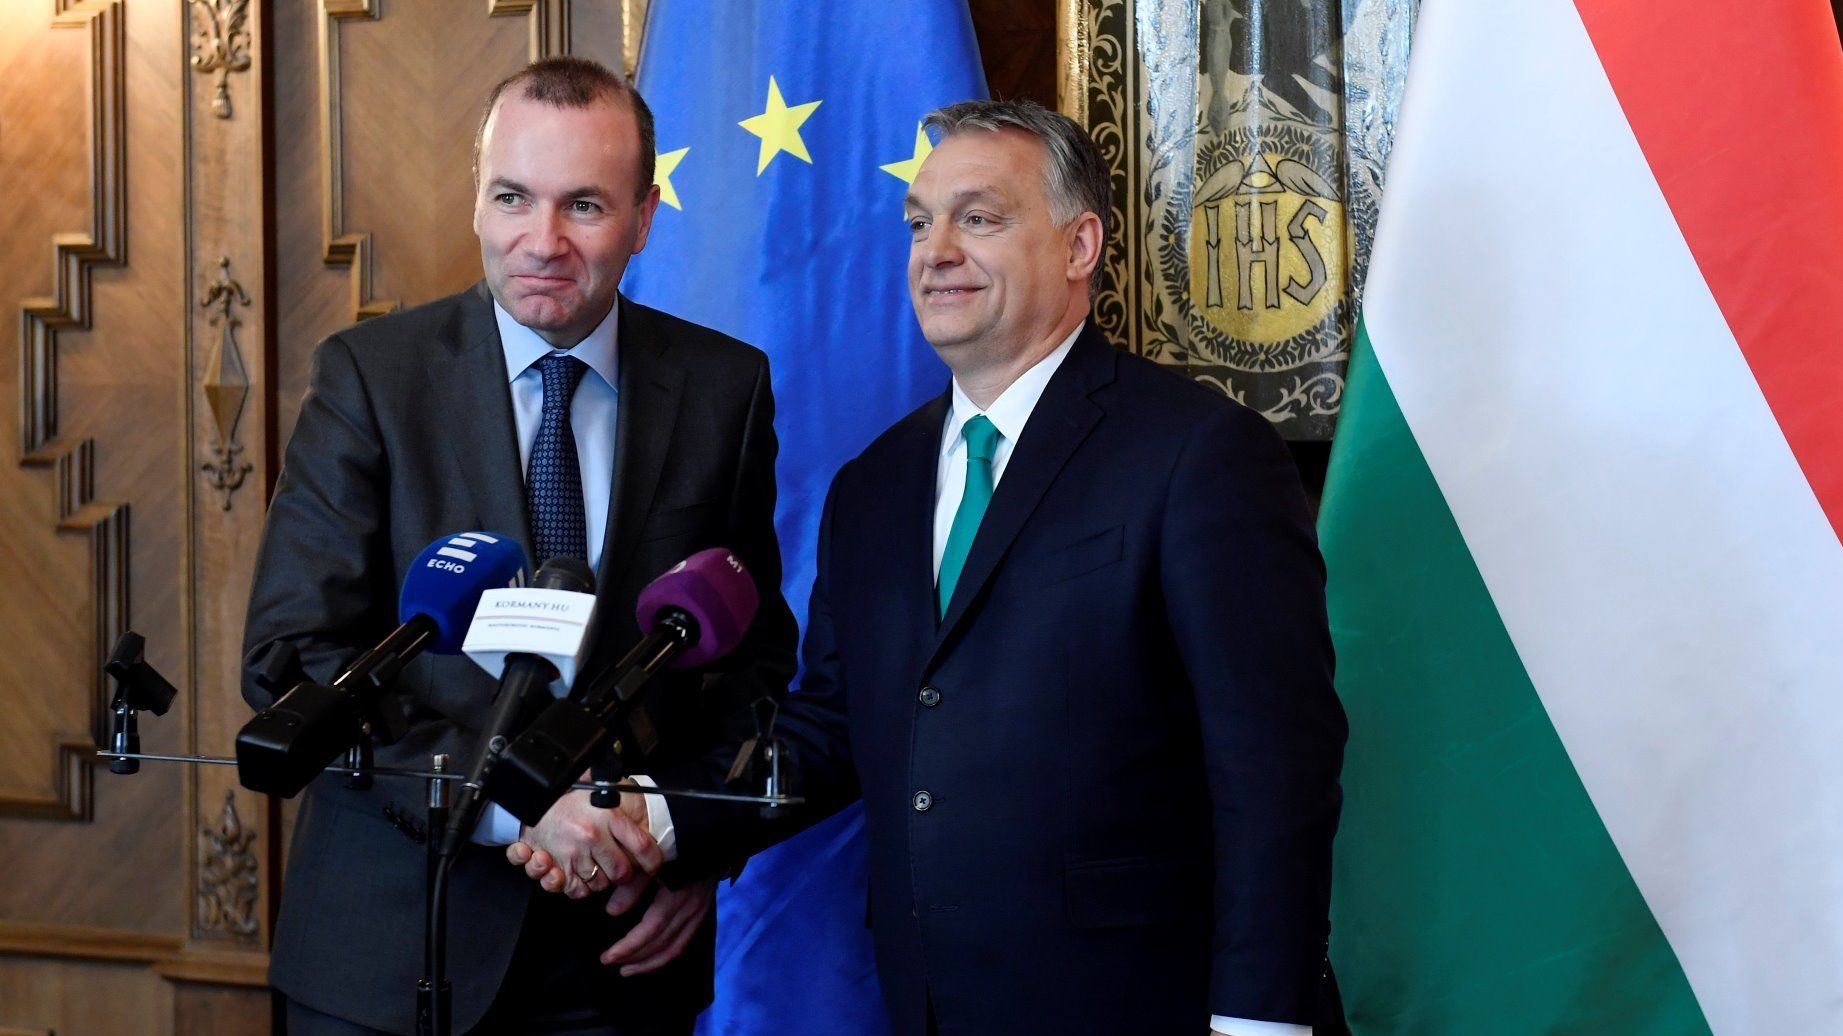 Weber saját maga teljesíti azt a feltételt, amelyet ő szabott Orbán Viktor számára